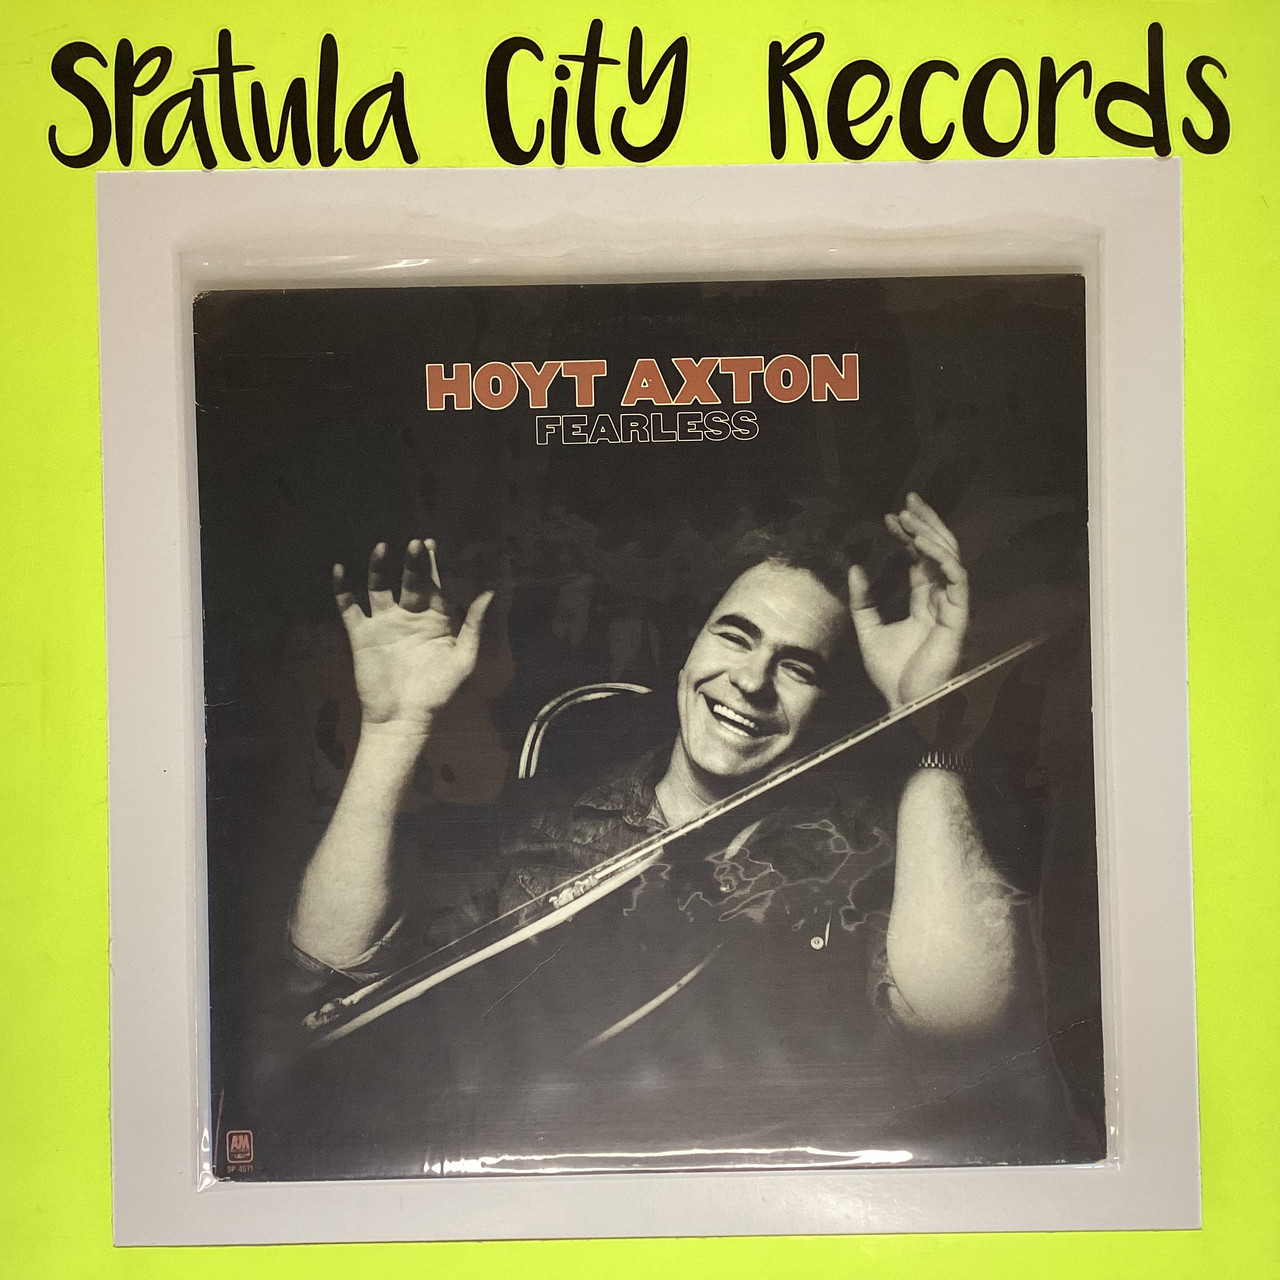 Hoyt Axton - Fearless - vinyl record LP